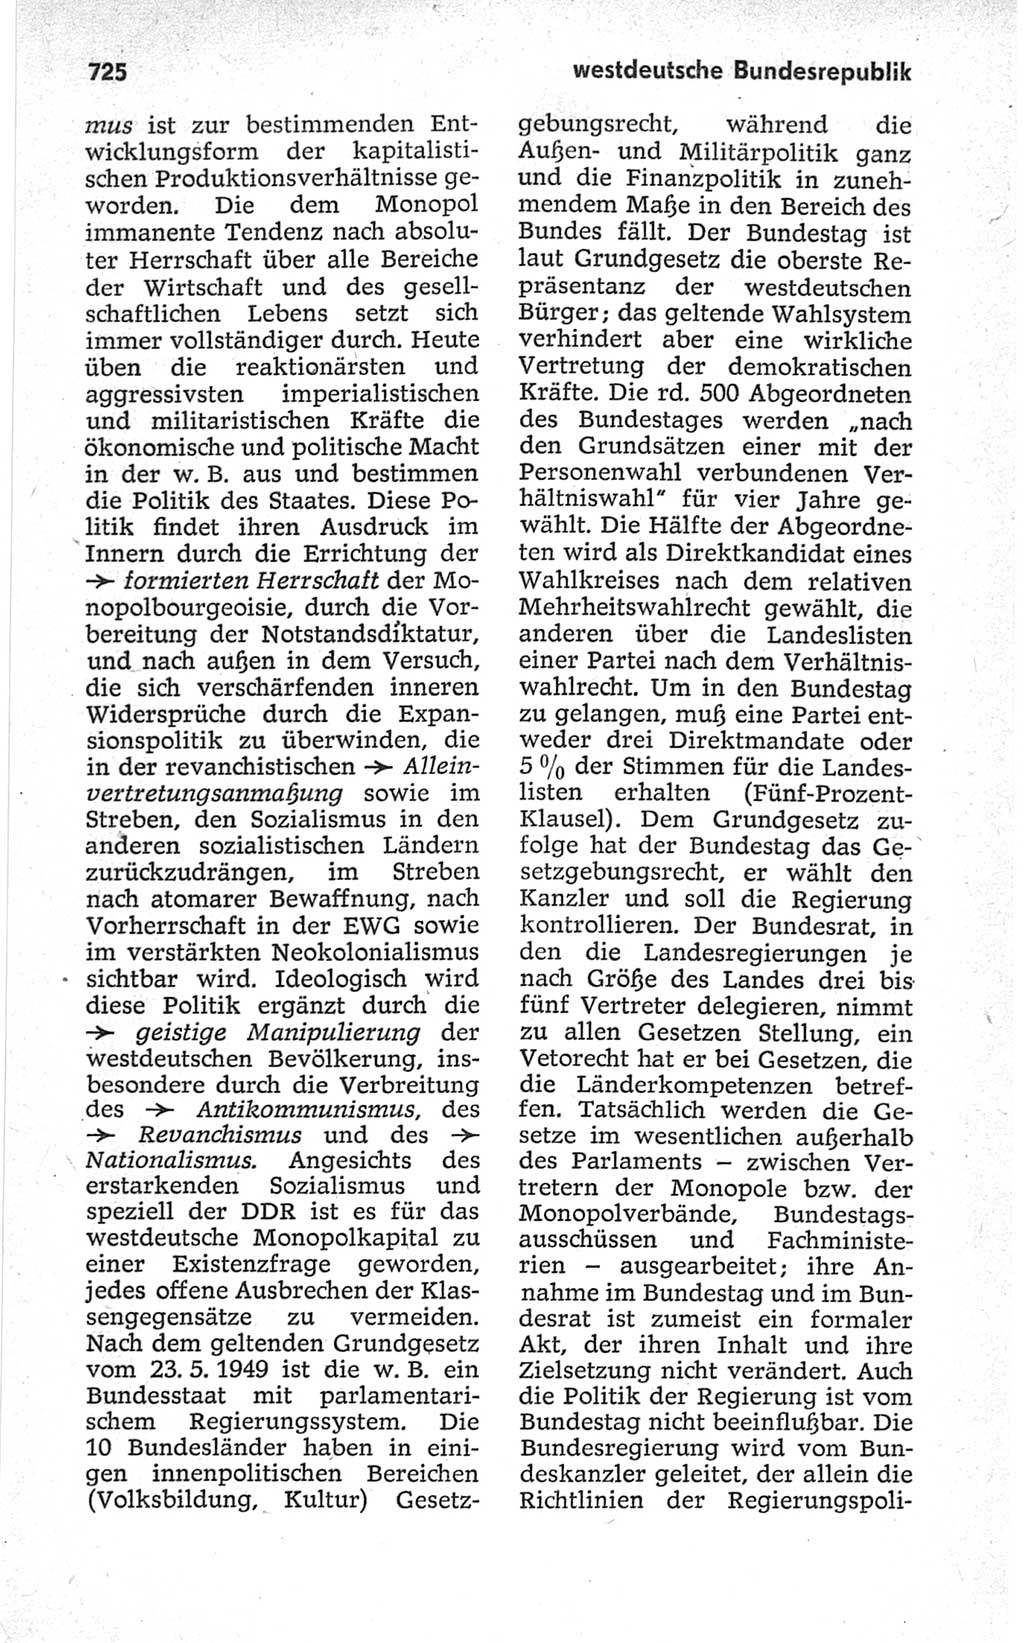 Kleines politisches Wörterbuch [Deutsche Demokratische Republik (DDR)] 1967, Seite 725 (Kl. pol. Wb. DDR 1967, S. 725)